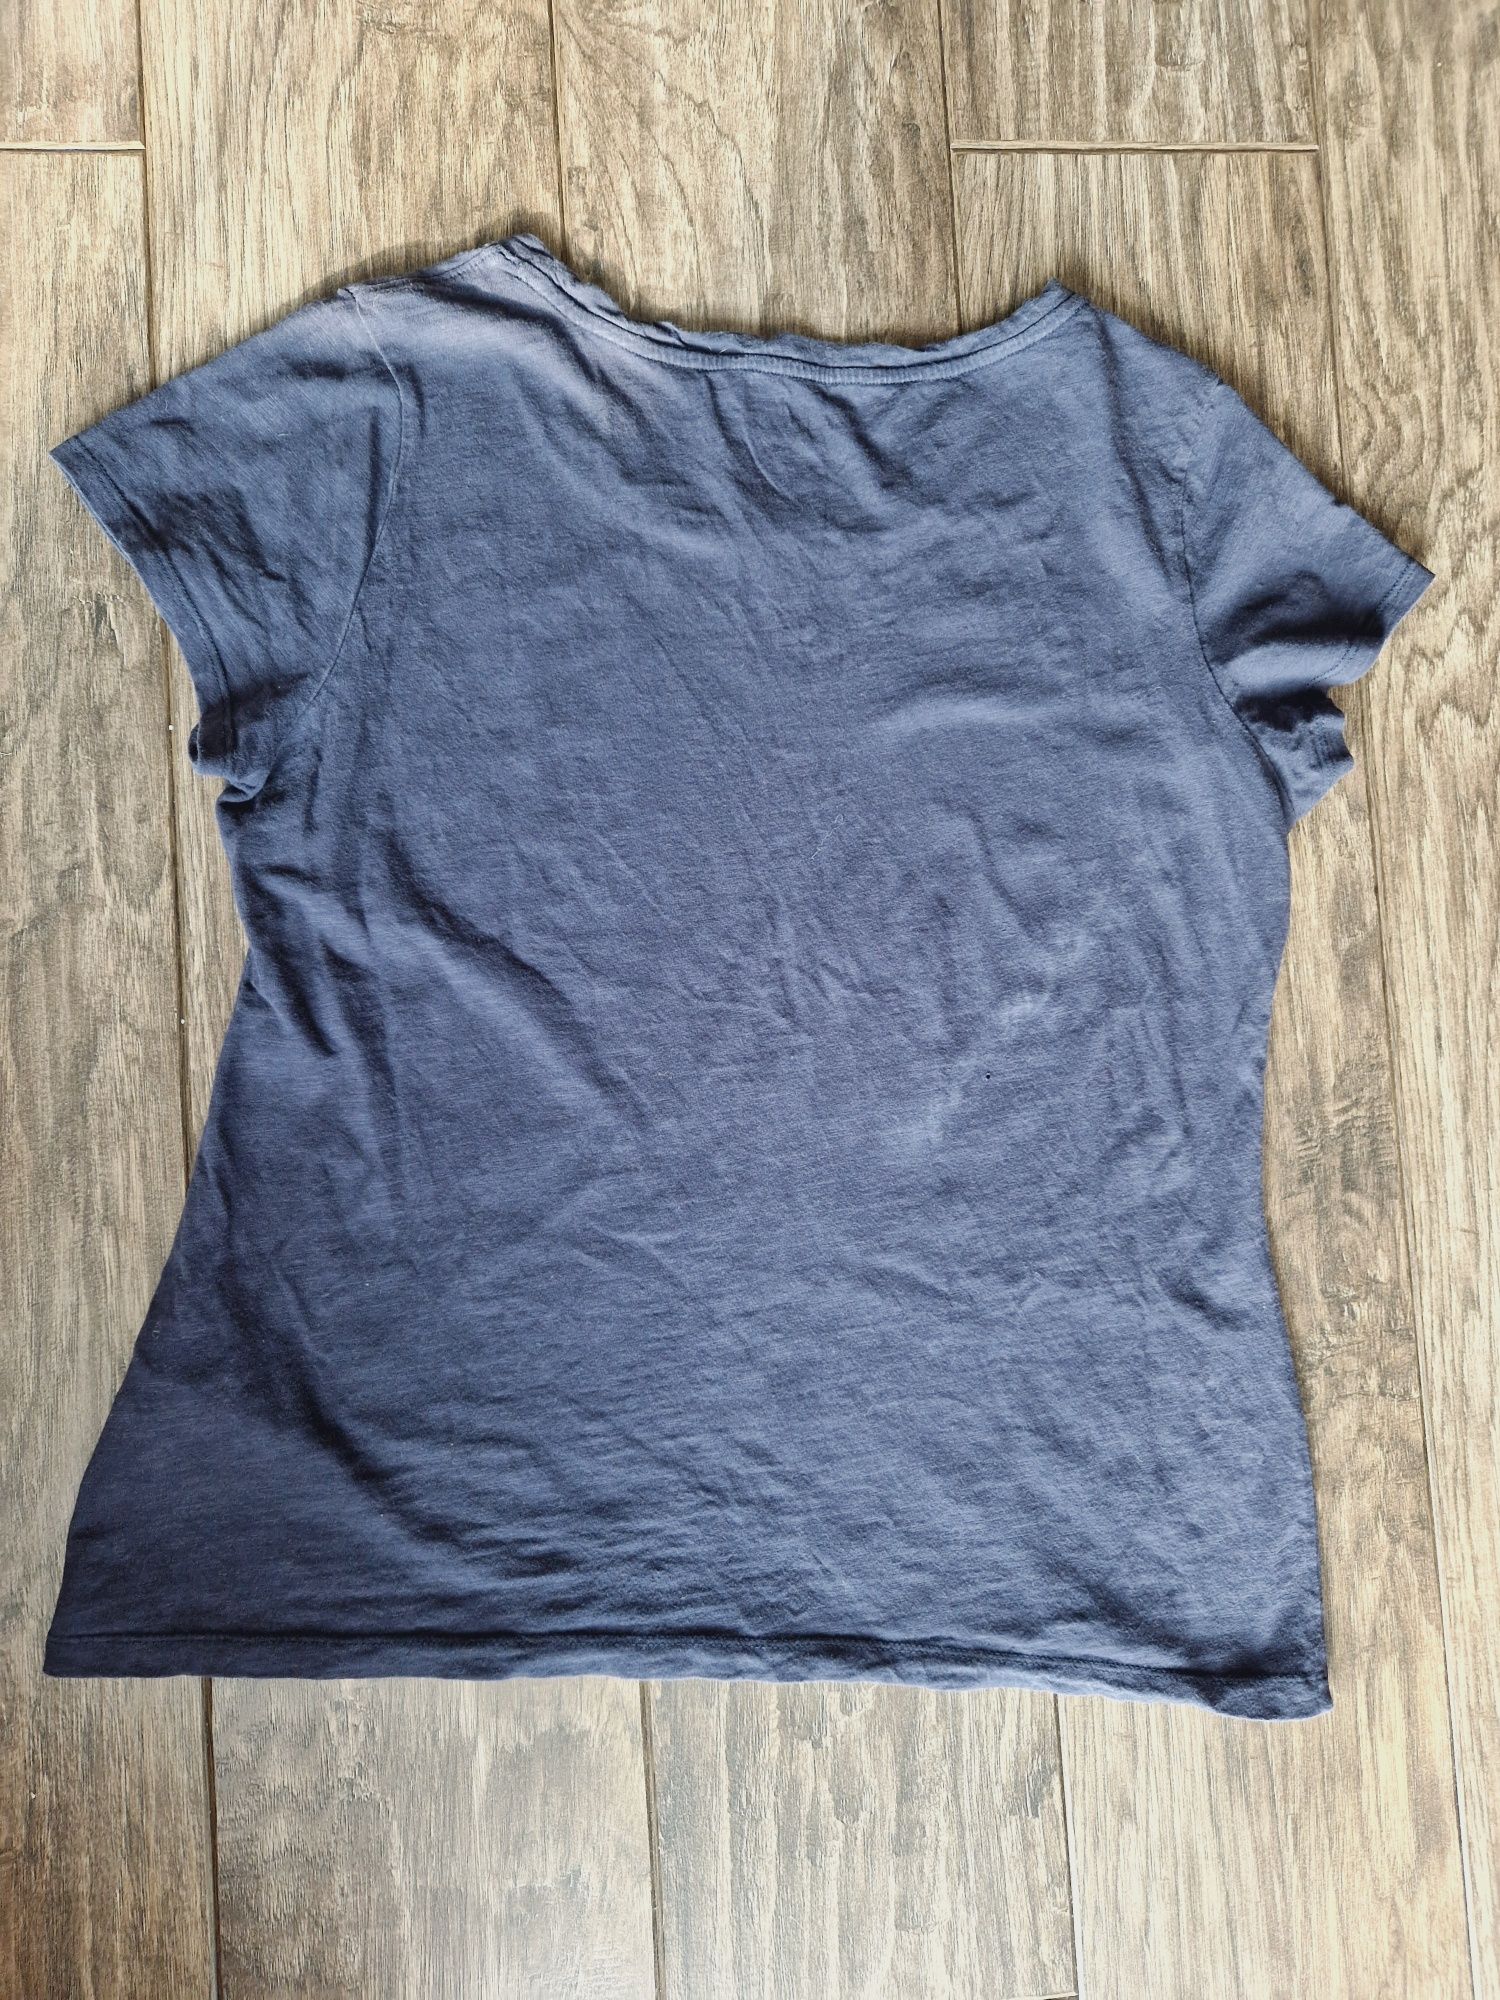 Granatowy t-shirt, koszulka Tommy Hilfiger, XL